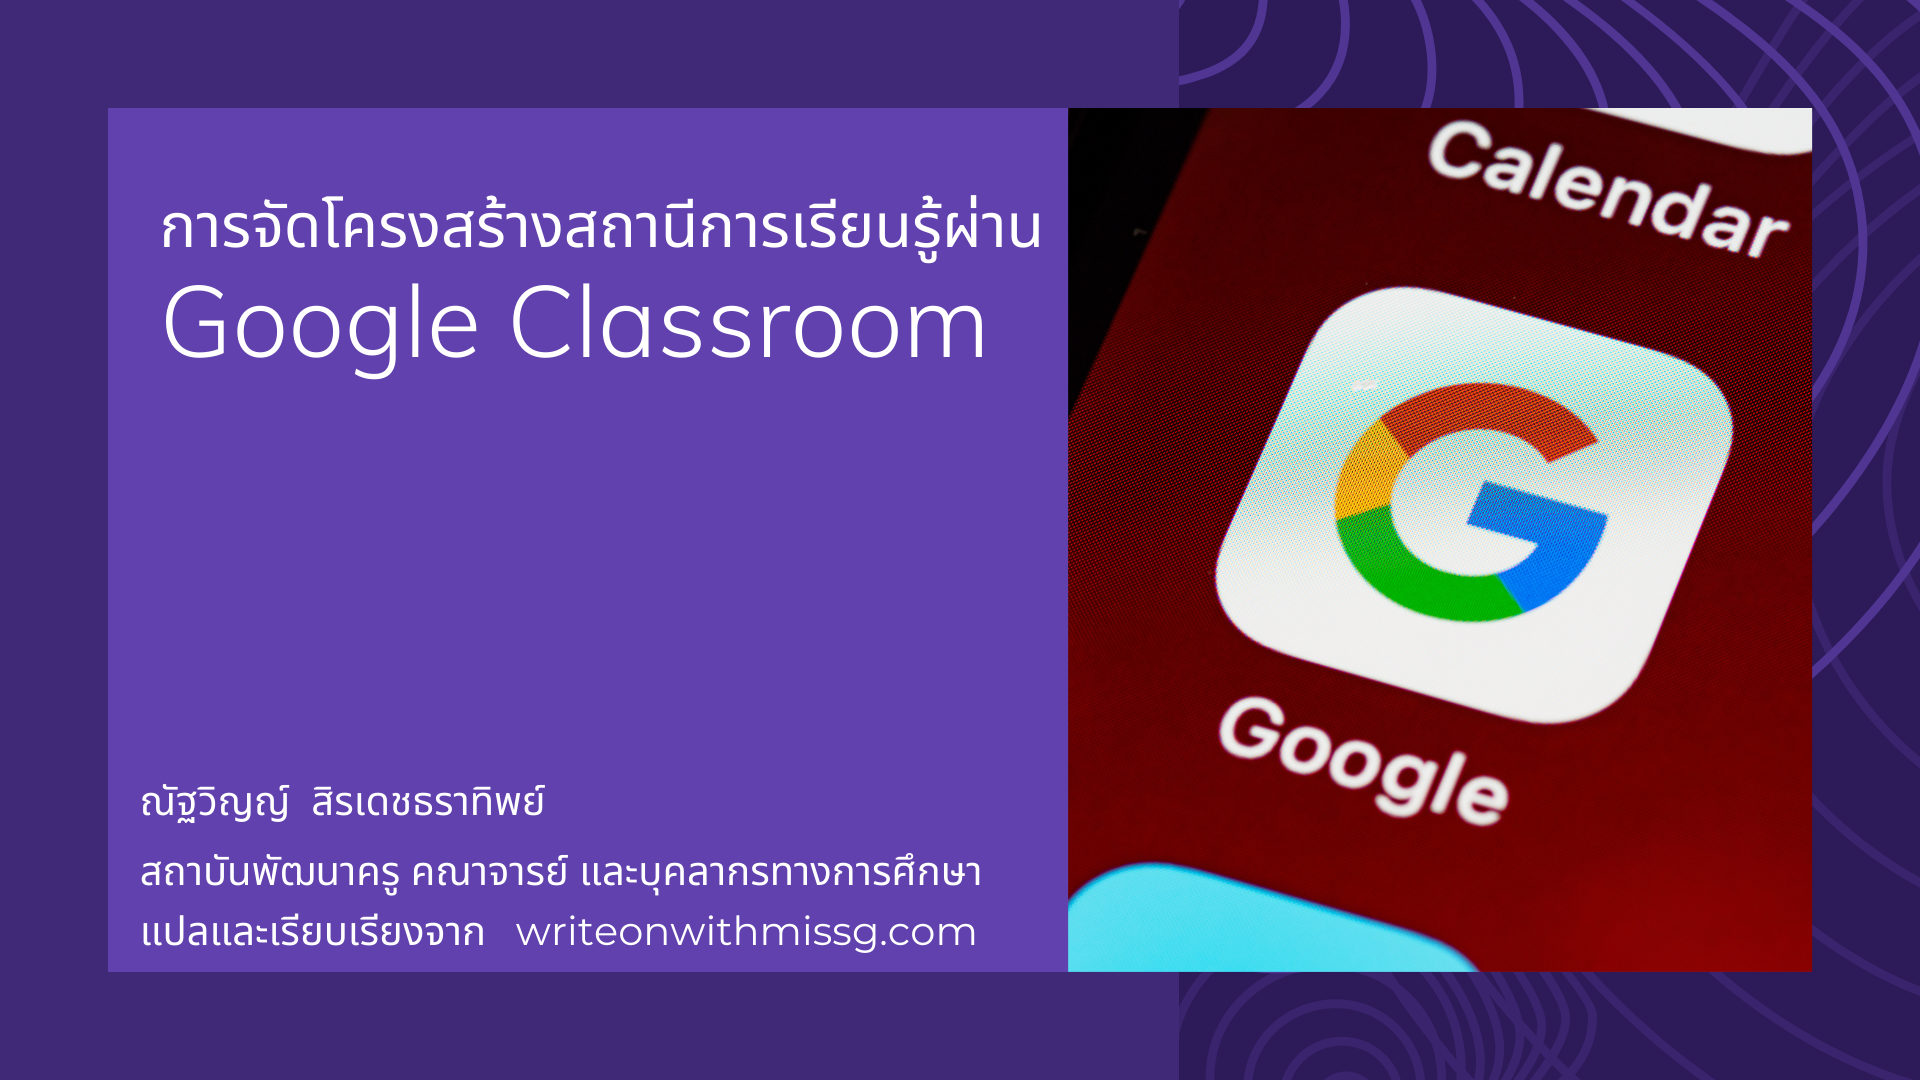 ภาพประกอบไอเดีย ใช้ Google Classroom ในการสอนออนไลน์แบบหมุนสถานี